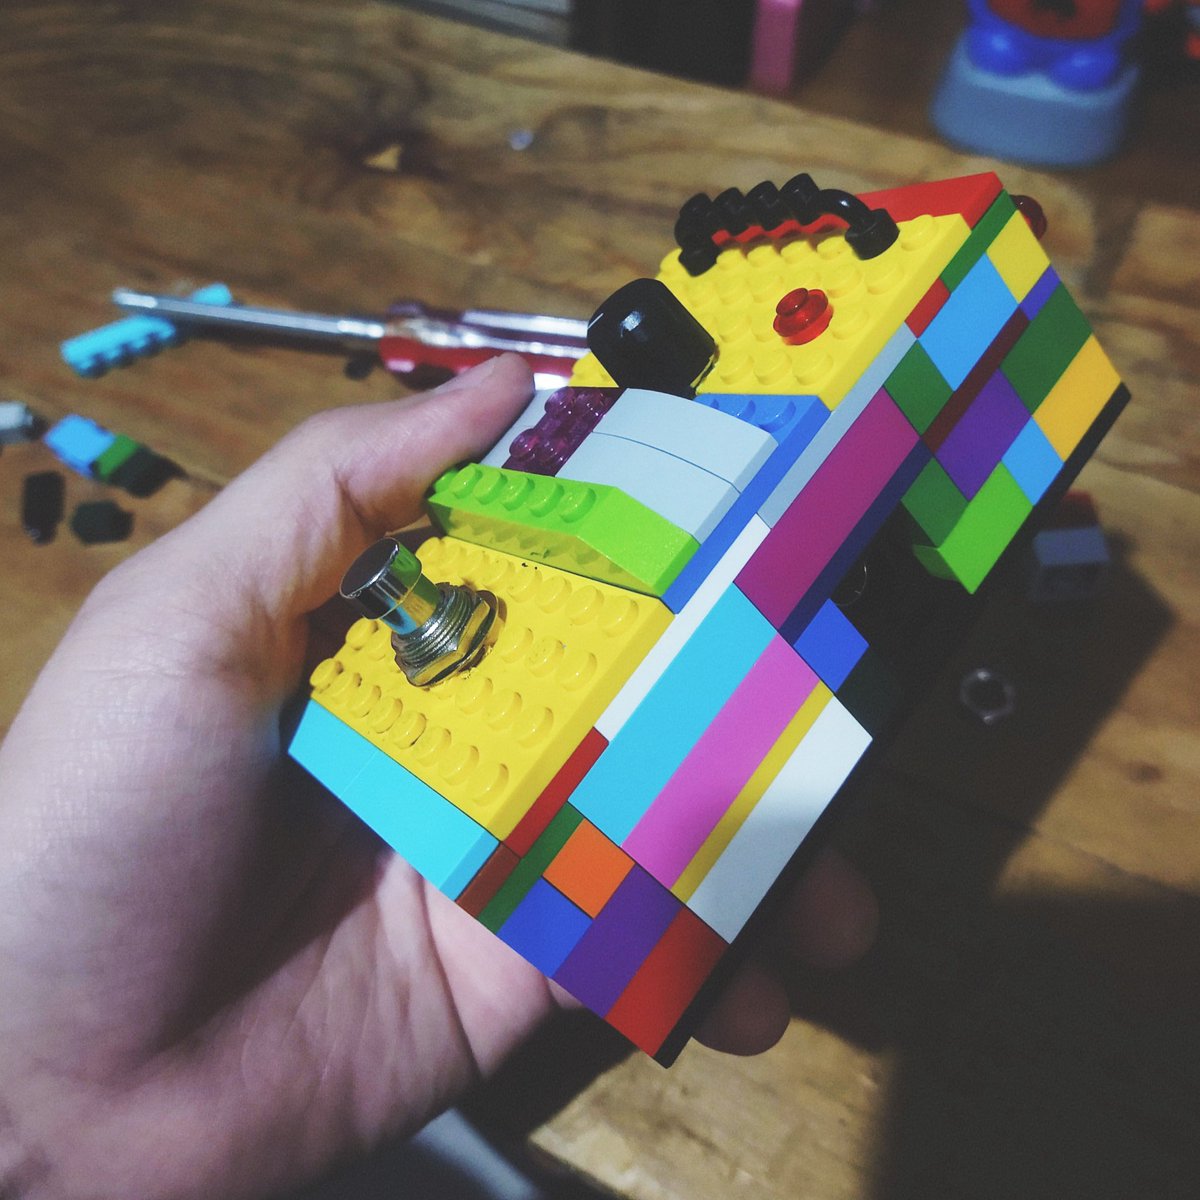 Trabajando en mi nuevo juguete, un pedal  Phaser hecho con LEGO.

#lefoumusic #lefou #punk #folkpunk #folk #punkrock #lego #brickart #pedalboard #pedalphaser